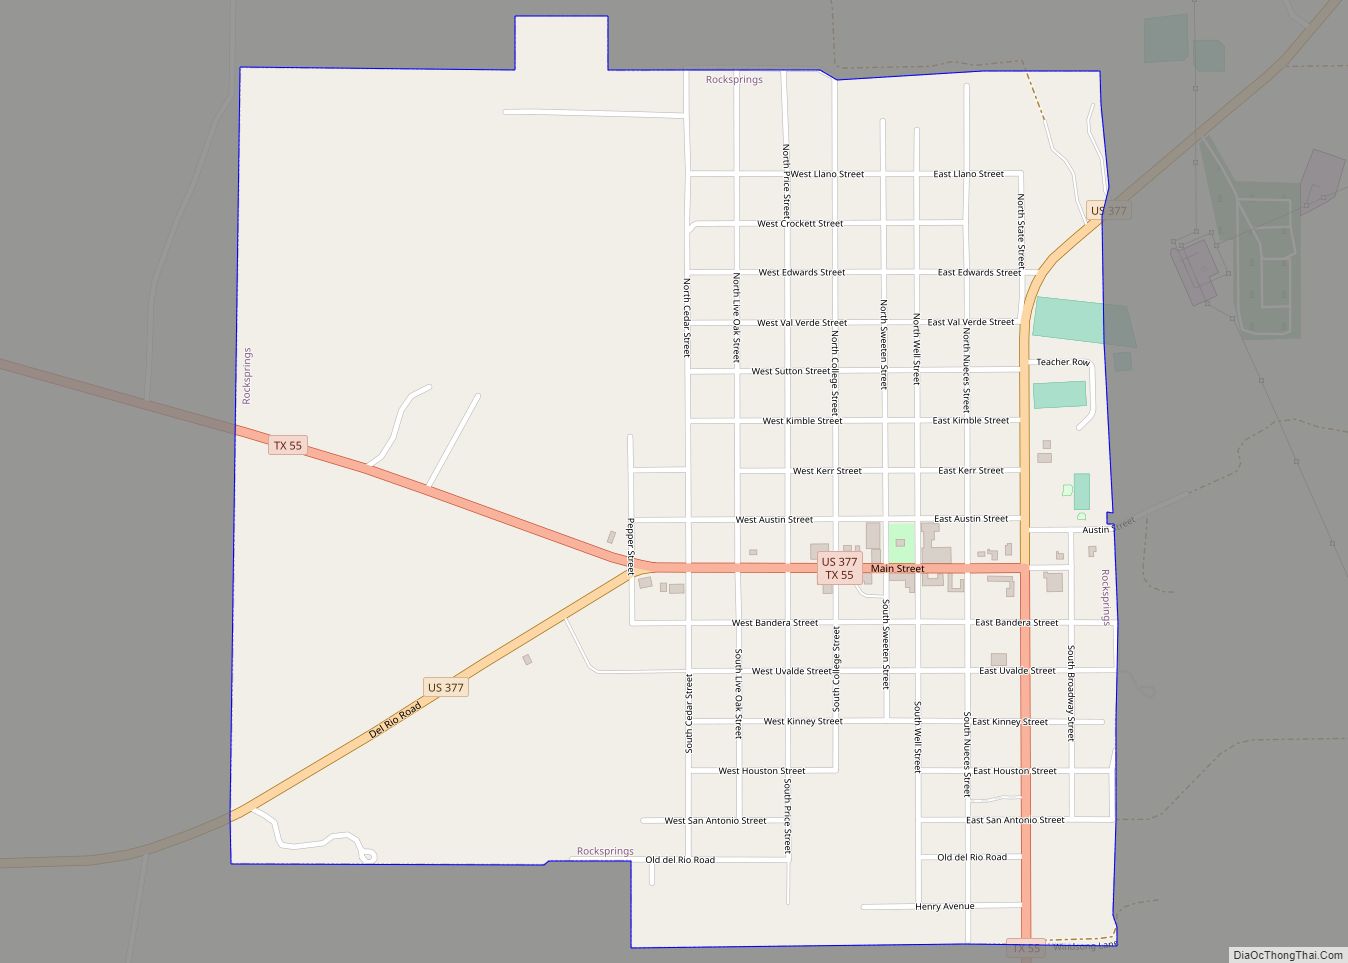 Map of Rocksprings town